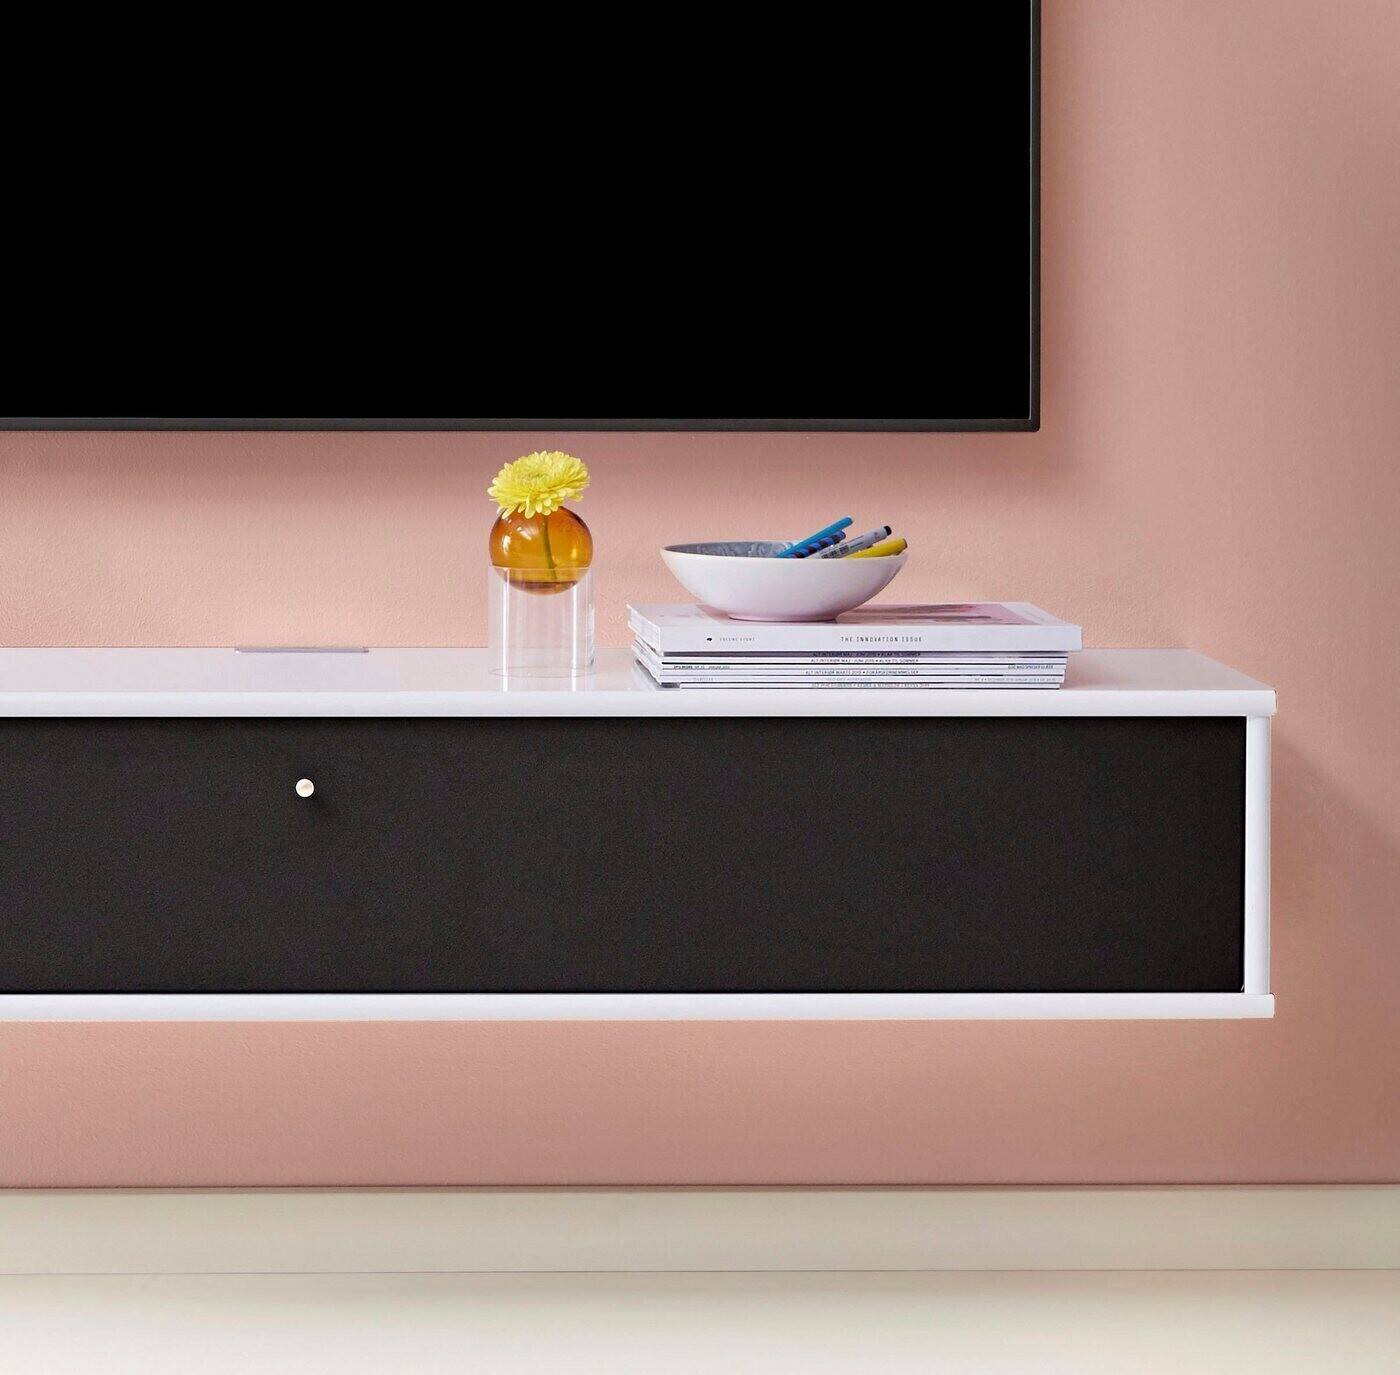 Hammel Furniture Mistral 133cm weiß lackiert/schwarz Stoff ab 569,50 € |  Preisvergleich bei